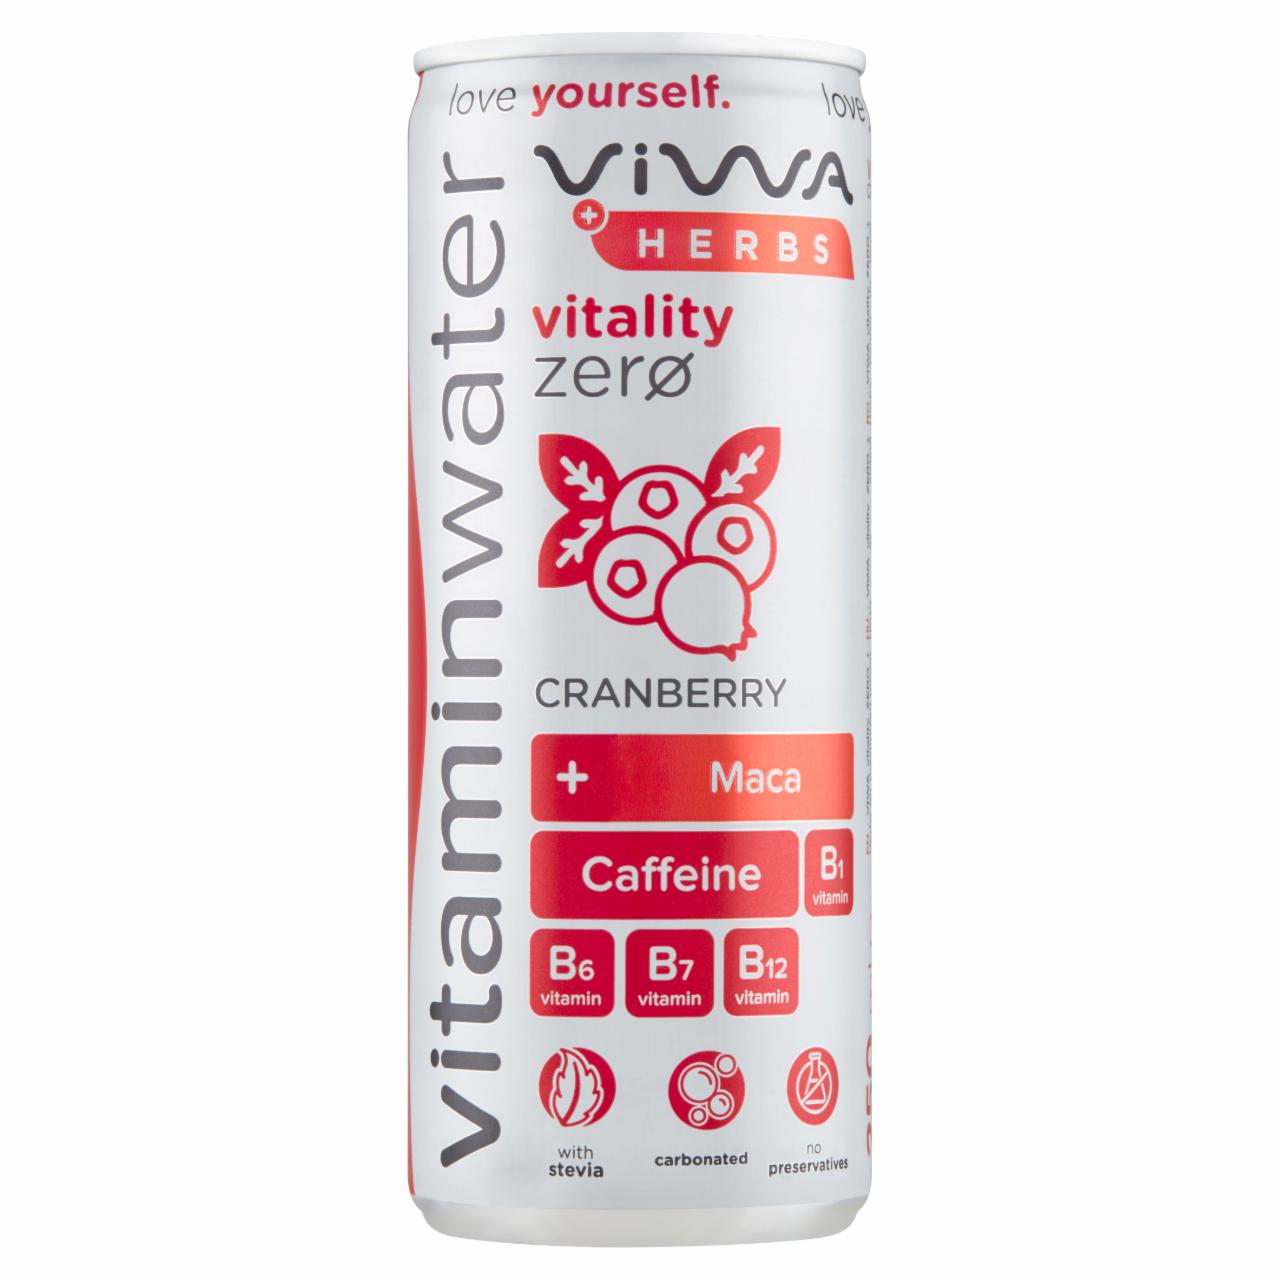 Képek - Viwa Vitaminwater Vitality Zero + Herbs vörös áfonya ízű energiamentes, szénsavas üdítőital 250 ml